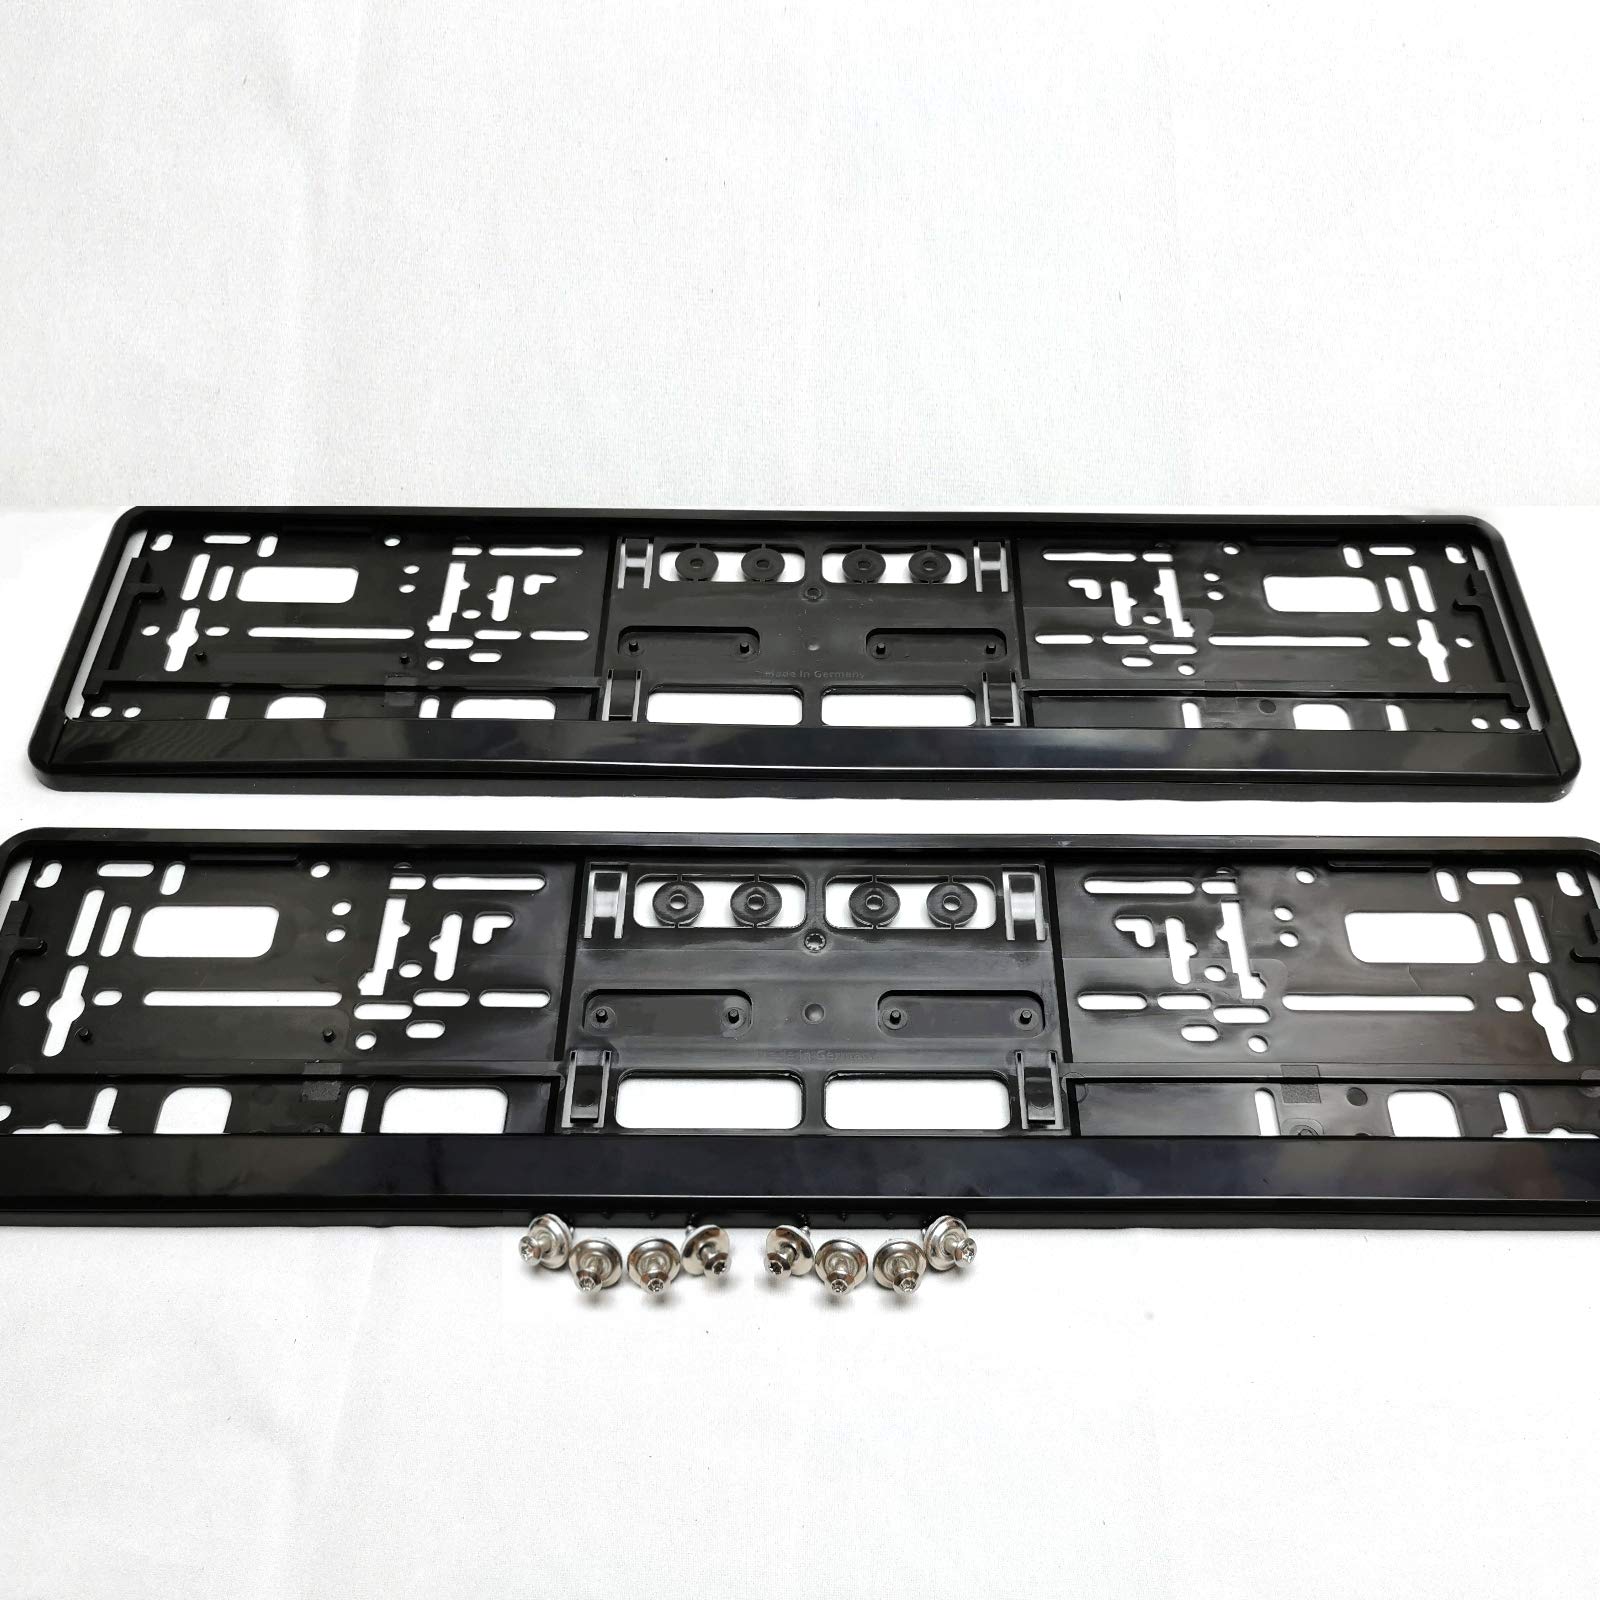 2 x i-mex Kennzeichenhalter | schwarz | inkl. 8 x Befestigungsschrauben | universal | für EU-Schilder 520 x 110 mm | Kennzeichenhalterung | Nummernschildhalter von i-mex